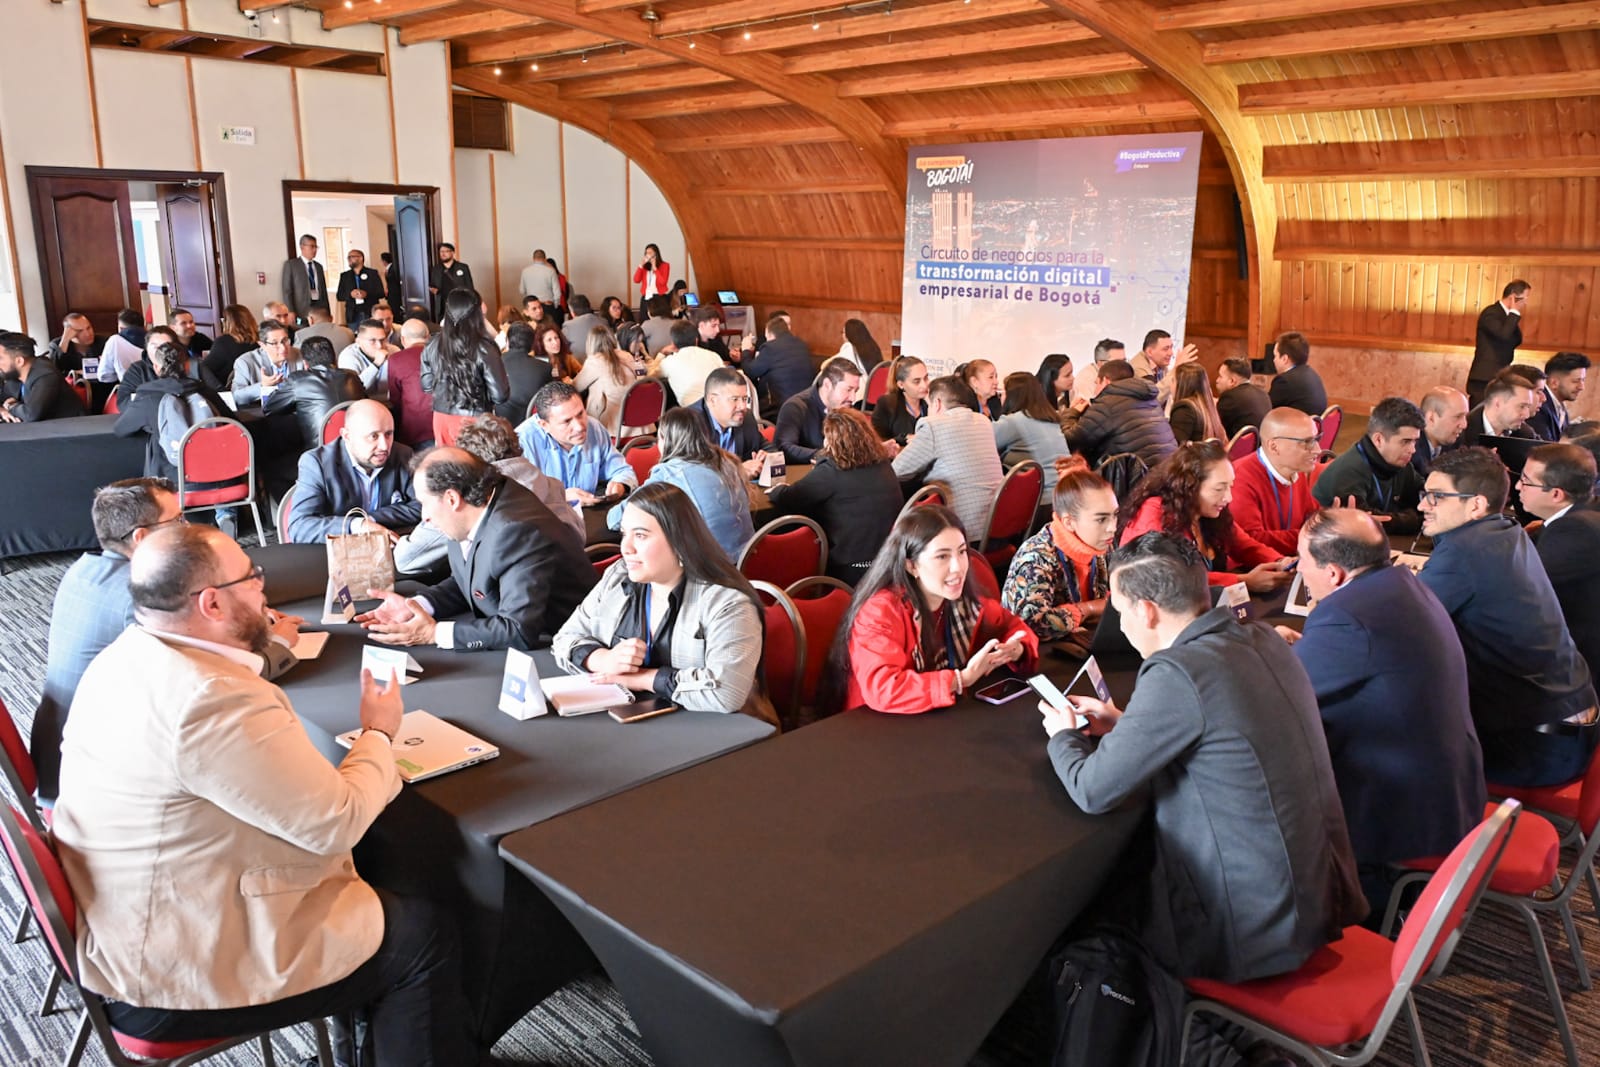 Imagen relacionada con evento de Circuito de negocios para la transformación digital empresarial de Bogotá’